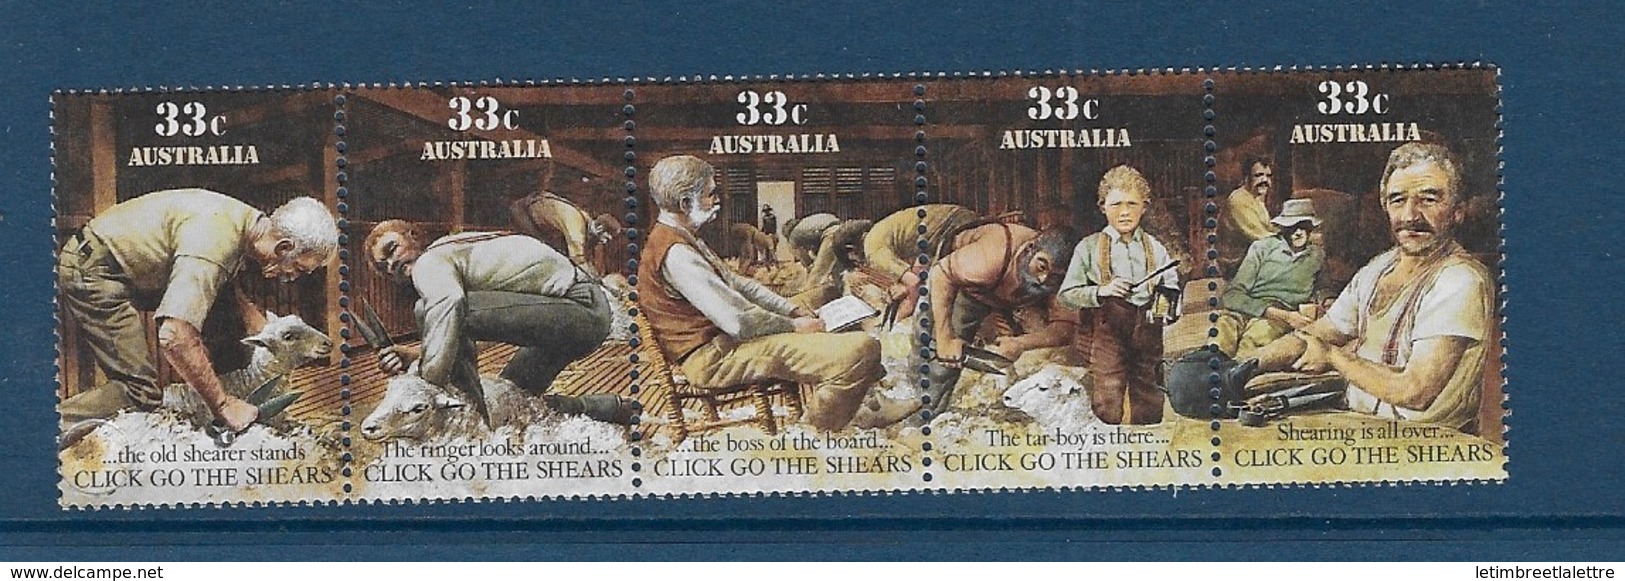 Australie N°955 à 959** - Mint Stamps